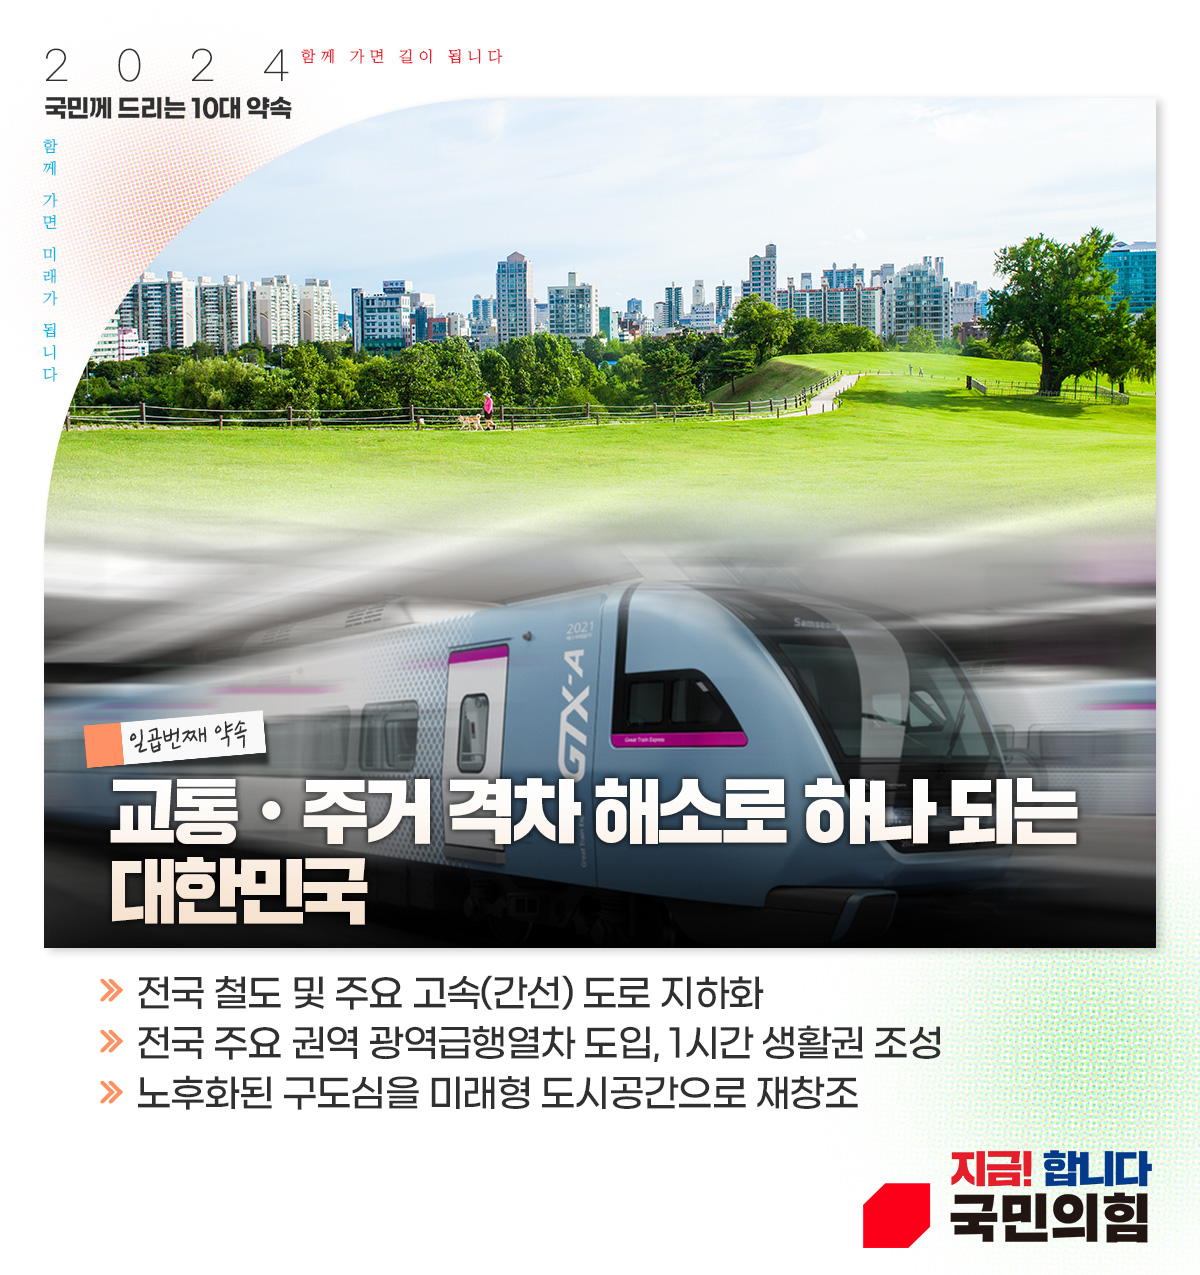 일곱번째 약속 : 교통·주거 격차 해소로 하나 되는 대한민국